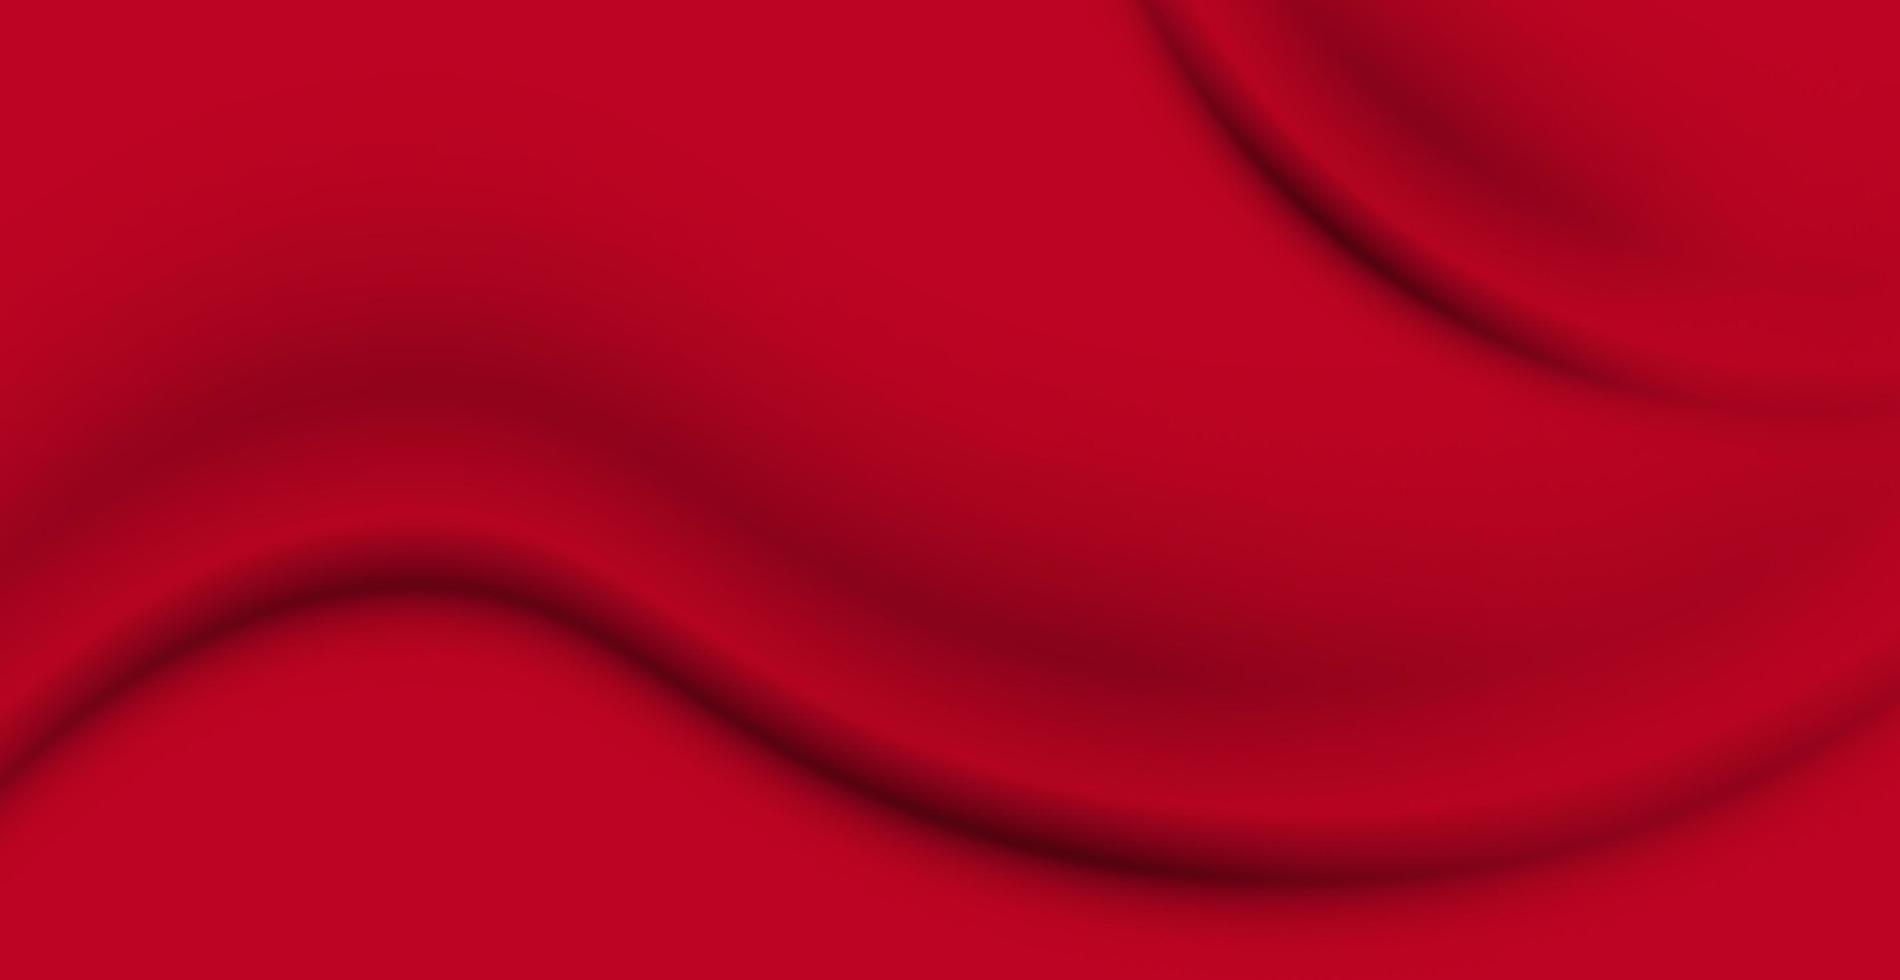 sfondo realistico di struttura del tessuto rosso stropicciato, pieghe - vettore